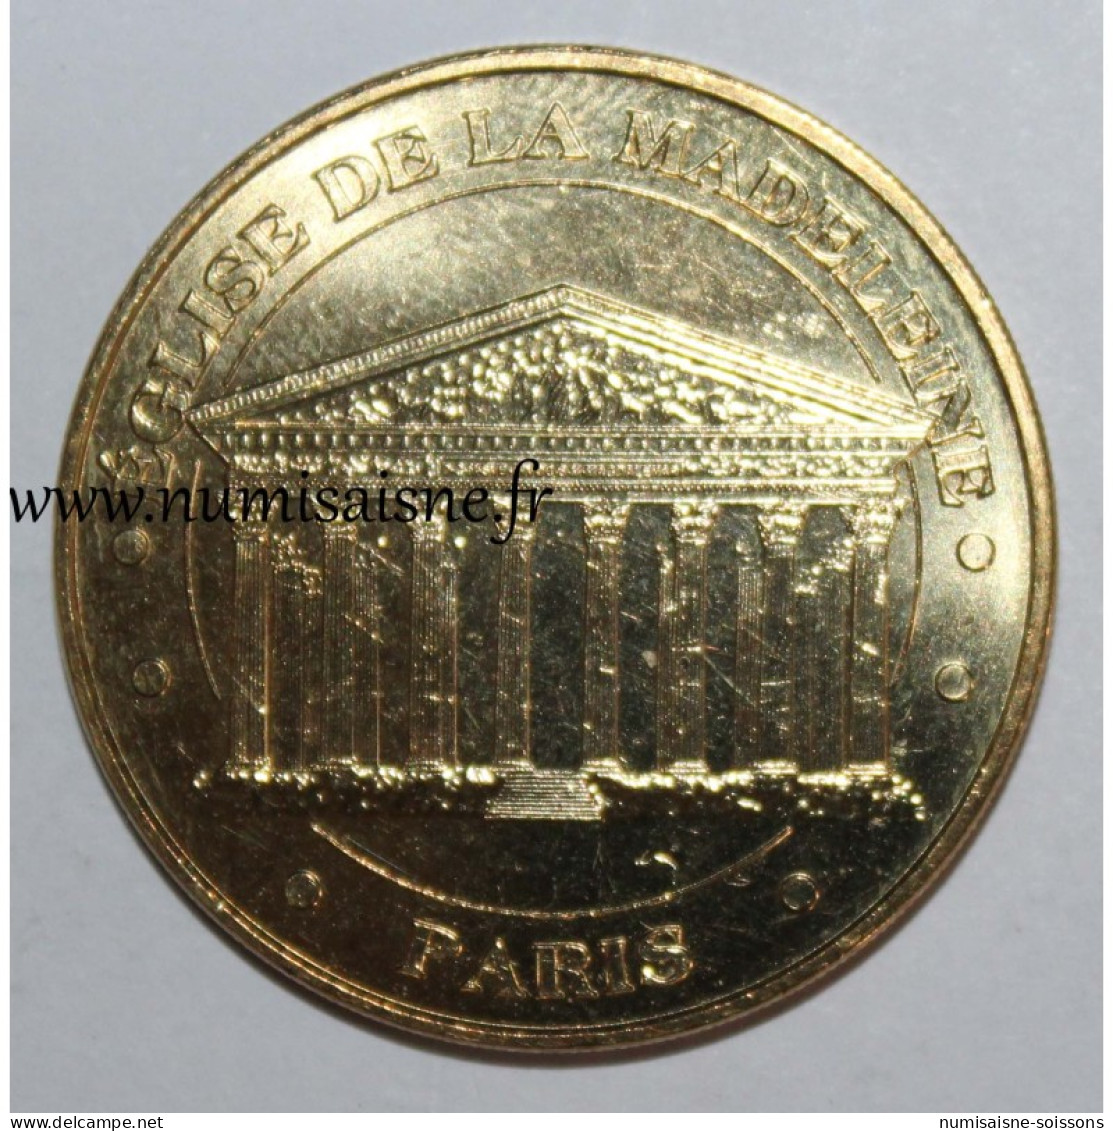 75 - PARIS - ÉGLISE DE LA MADELEINE - Monnaie De Paris - 2017 - Ohne Datum